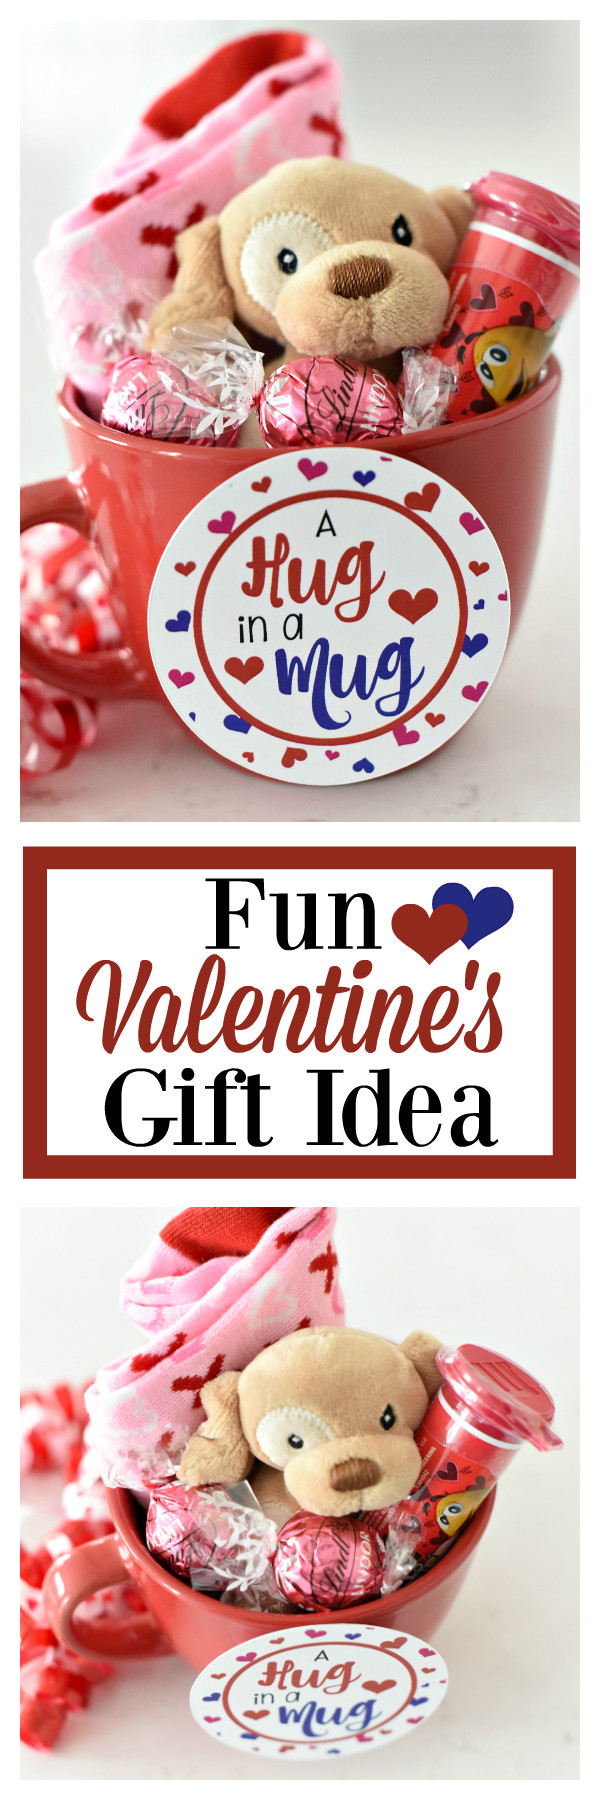 Fun Valentines Day Ideas
 Fun Valentines Gift Idea for Kids – Fun Squared